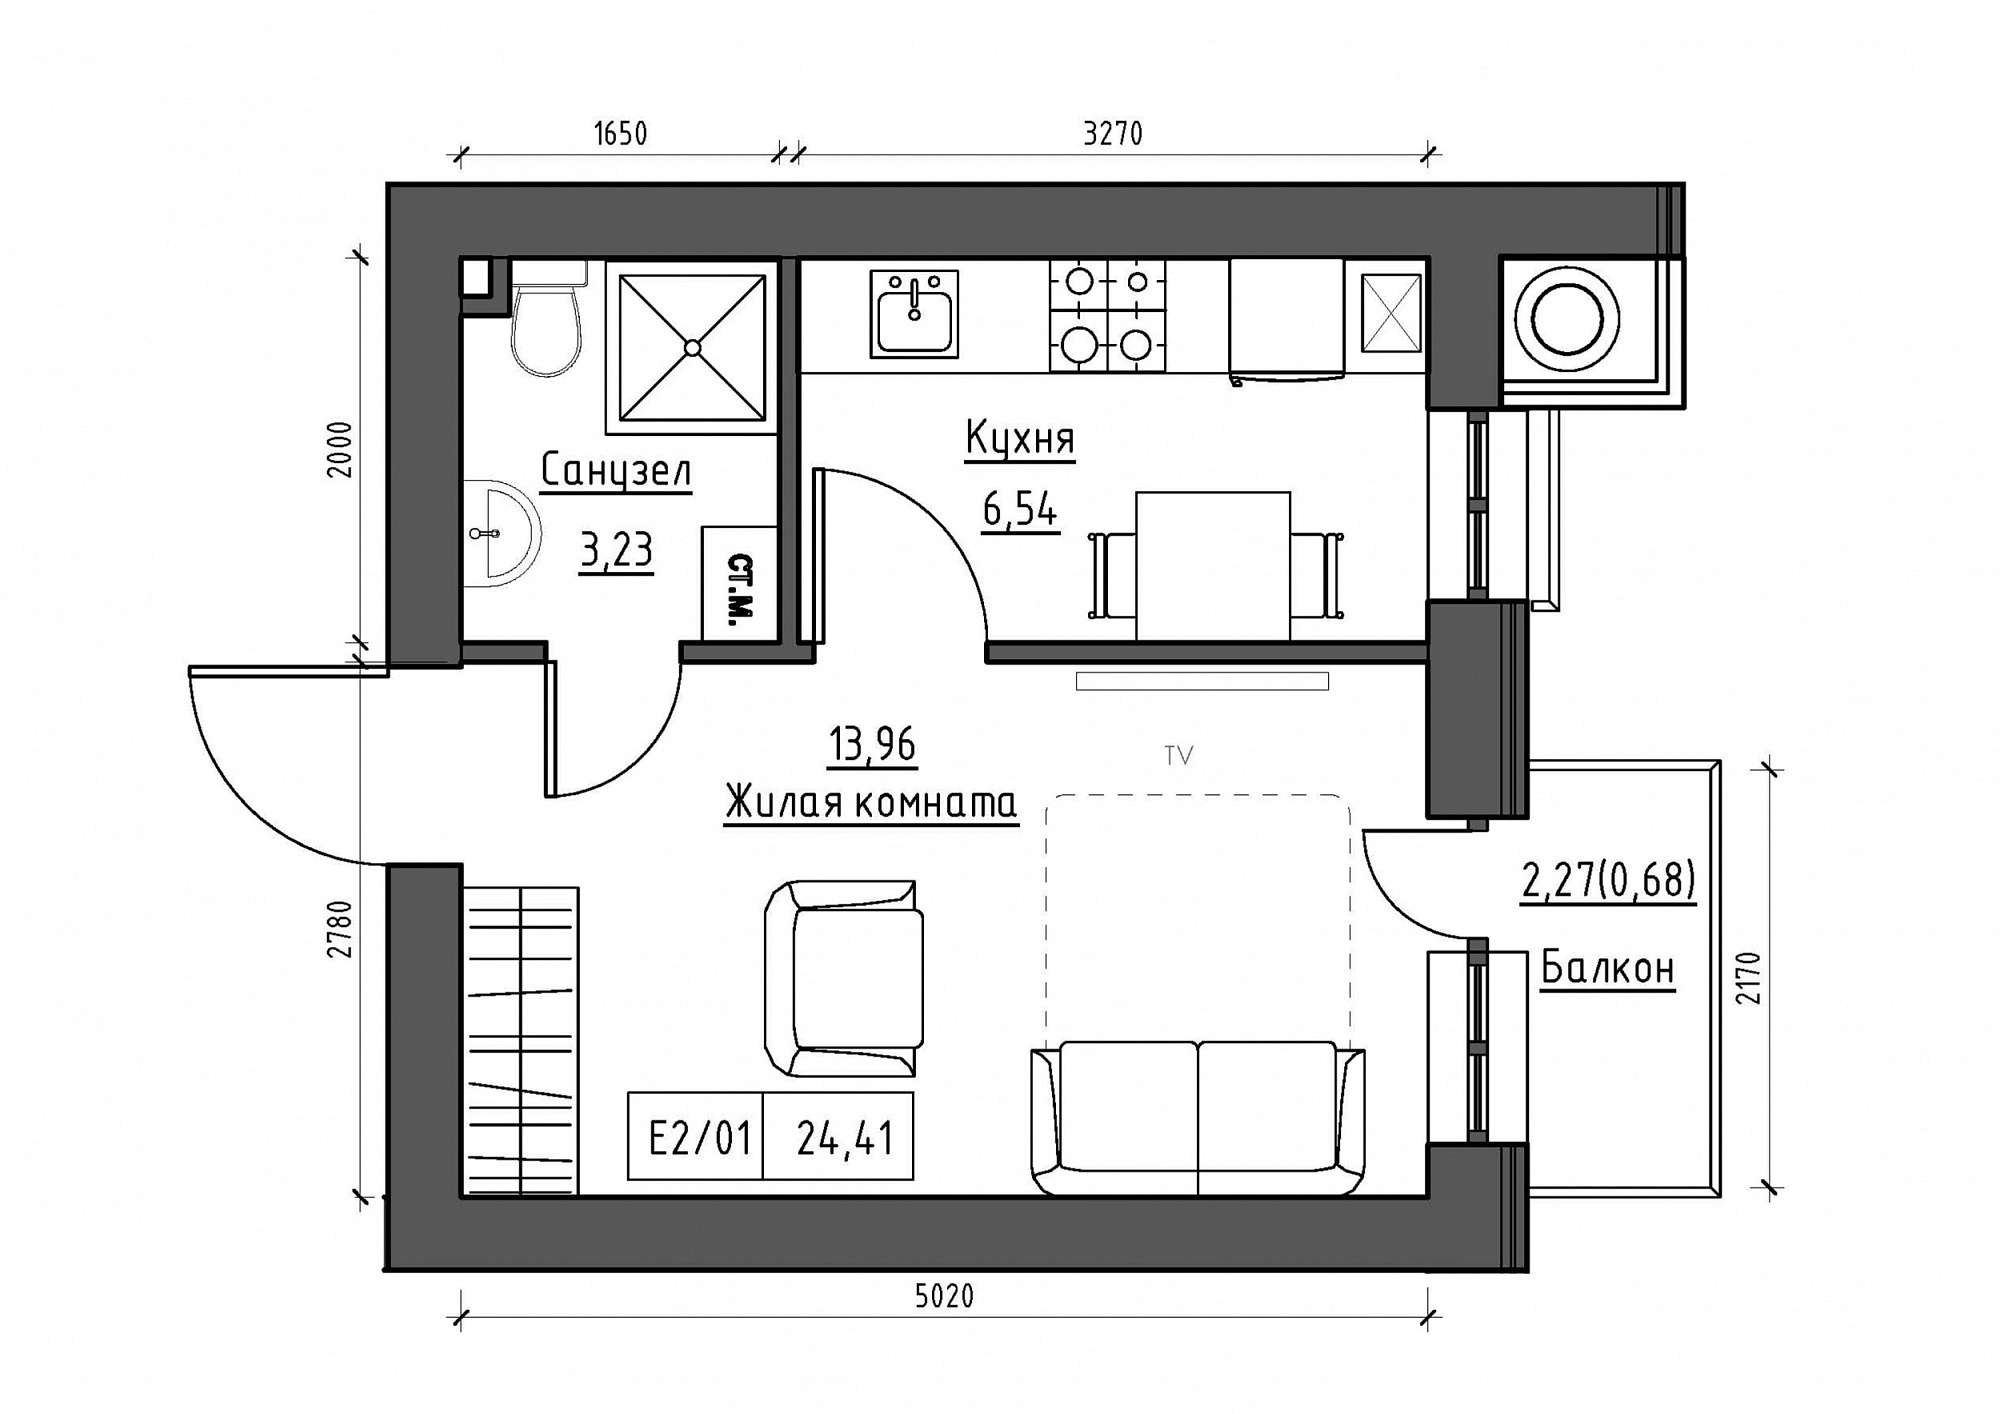 Планировка 1-к квартира площей 24.41м2, KS-011-03/0007.